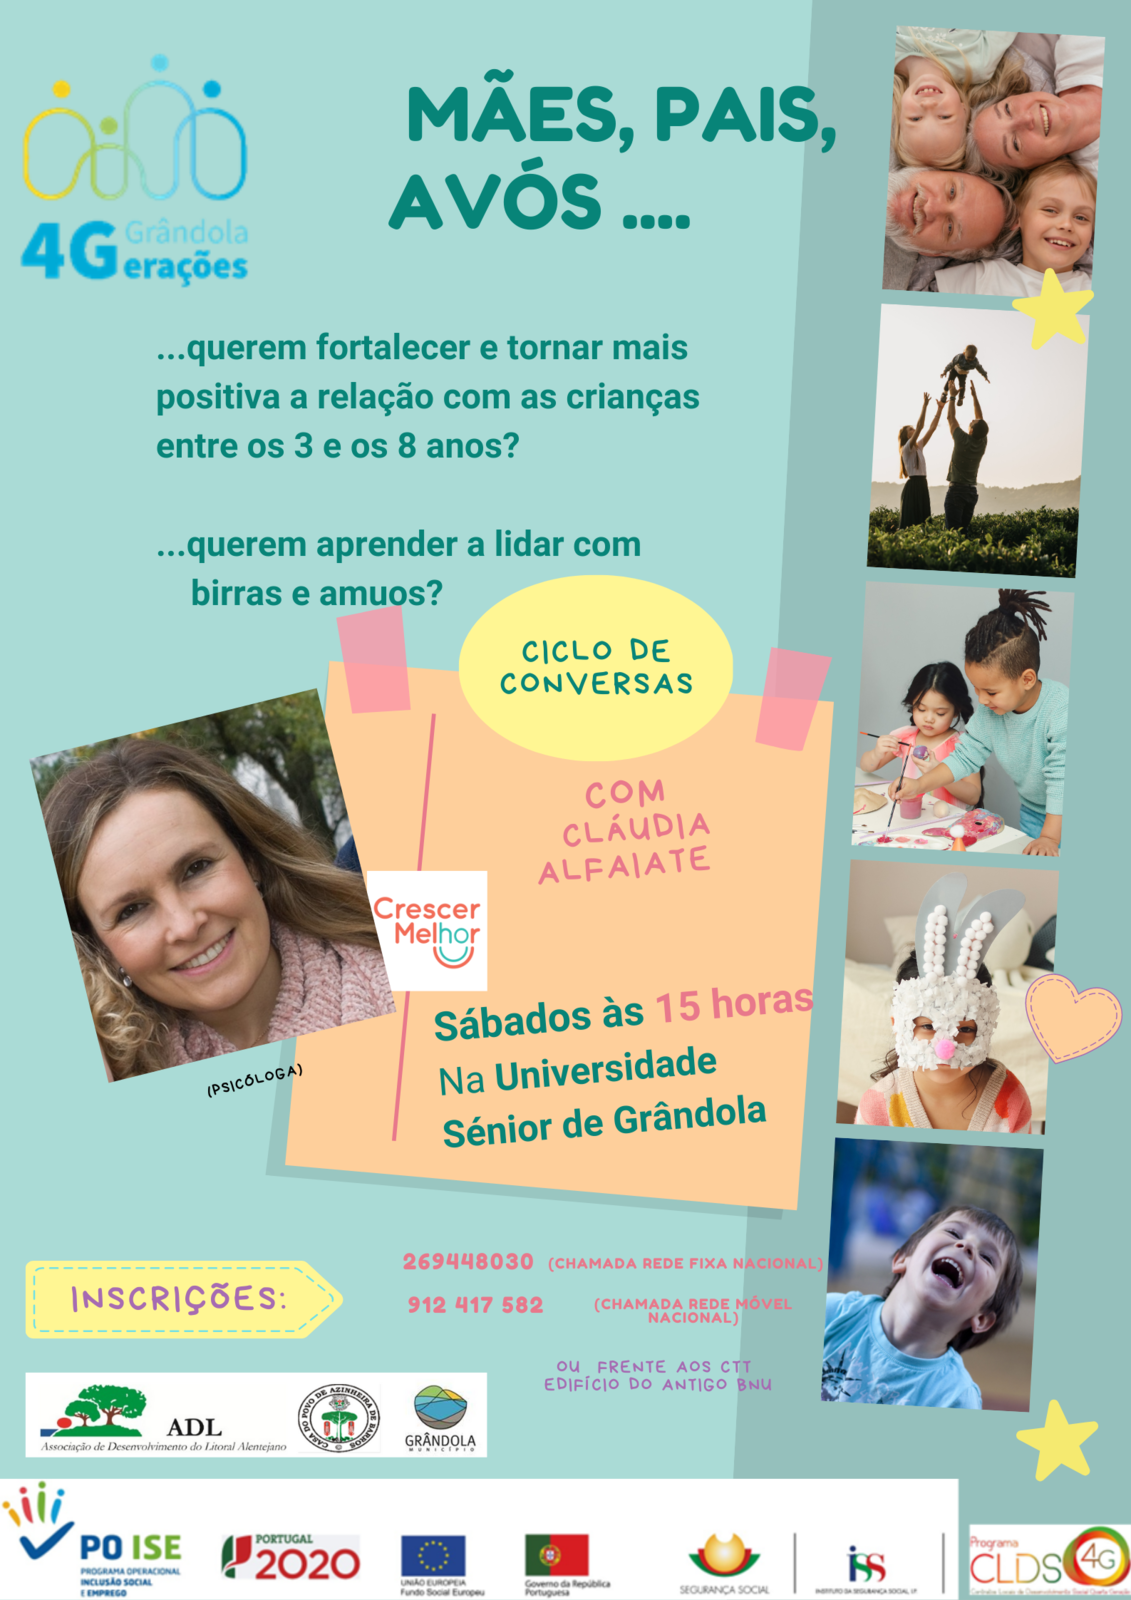 CICLO DE CONVERSAS | Mães, pais e avós.. com Cláudia Alfaiate